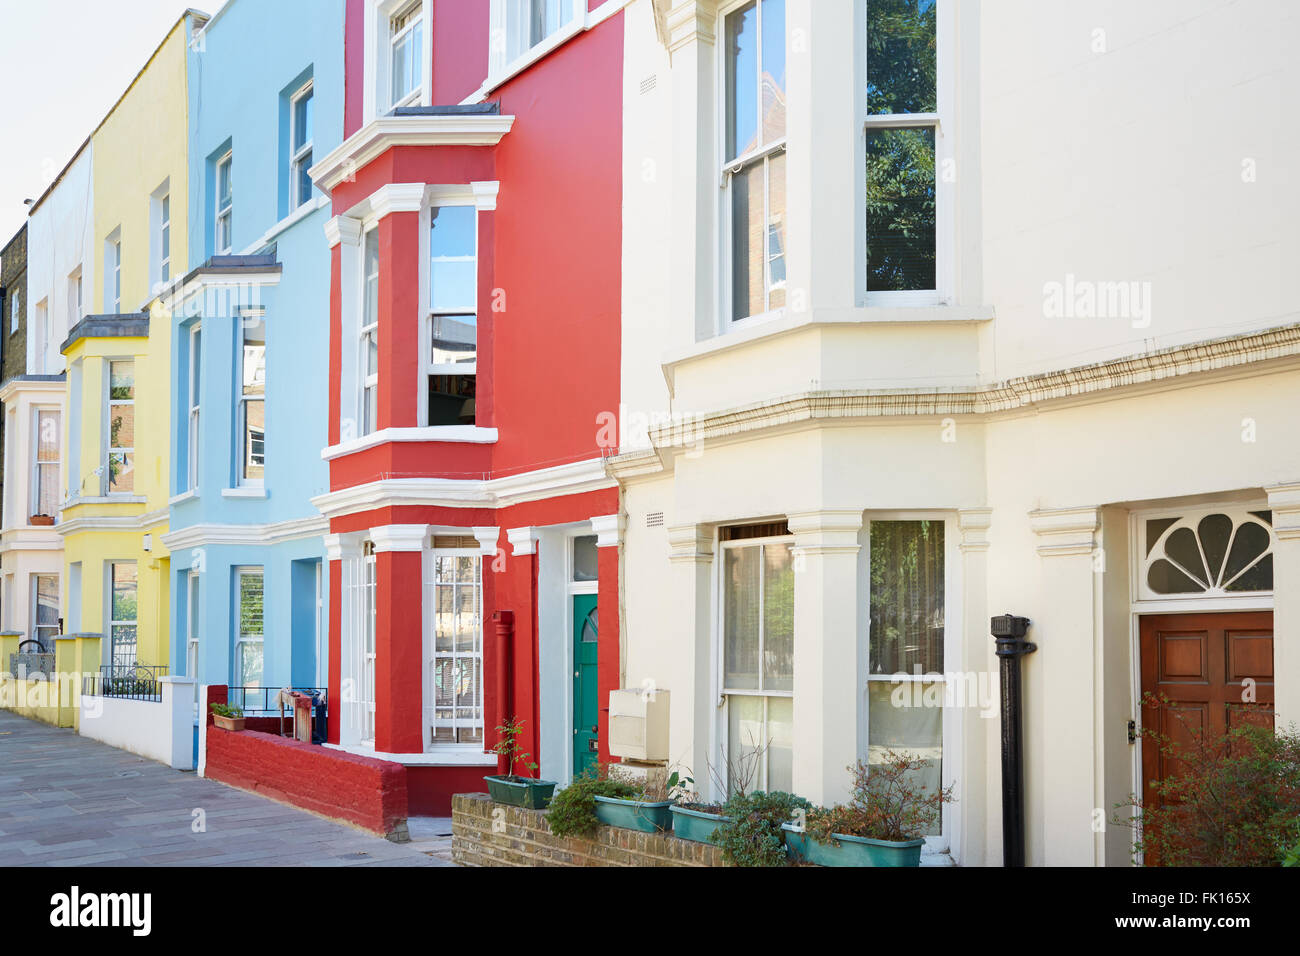 Façades de maisons colorées typiques de Londres Banque D'Images